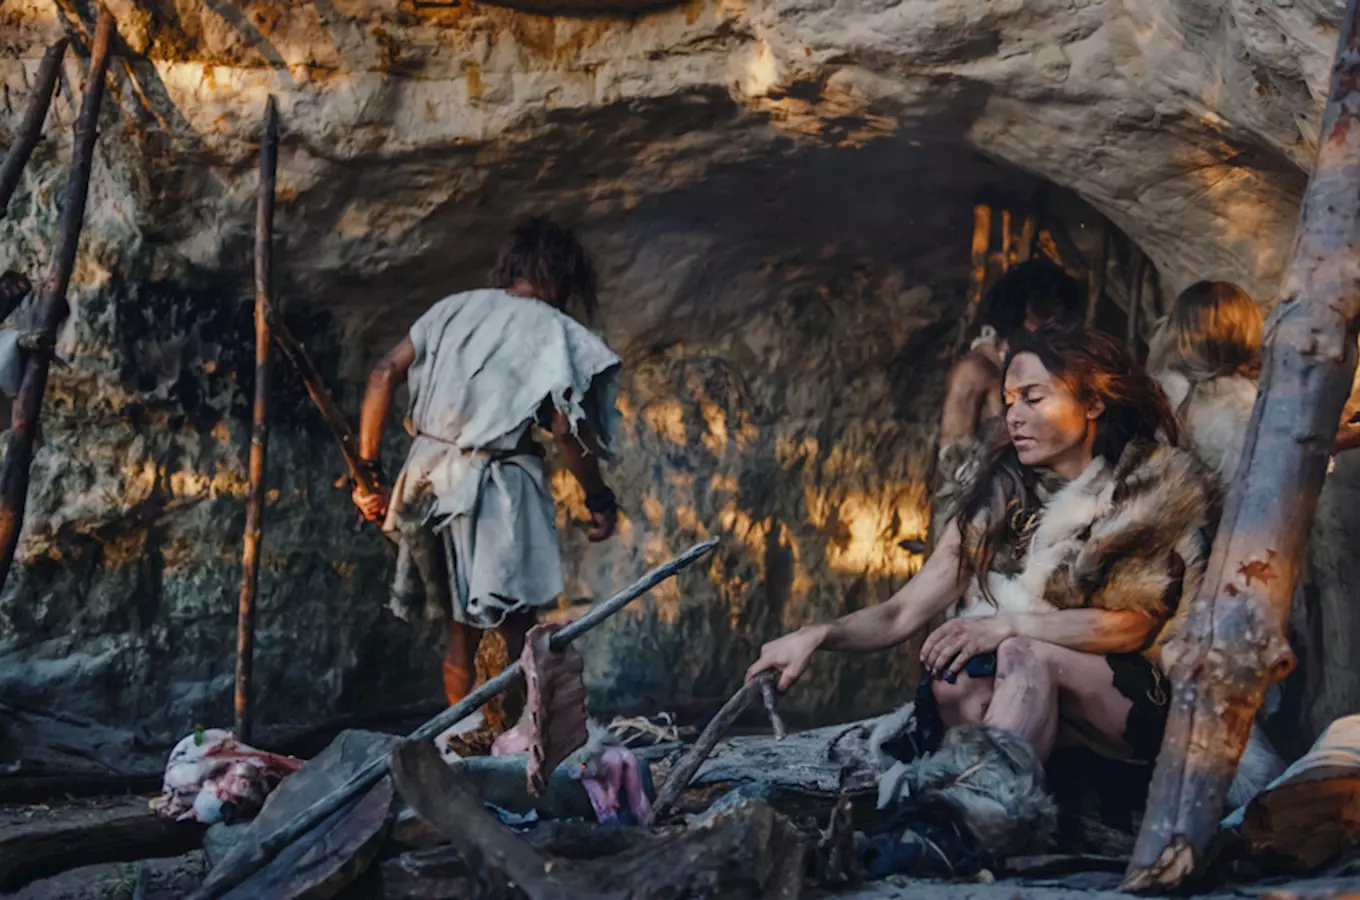 Jeskyně Šipka - nejstarší pozůstatky neandrtálského člověka v České republice